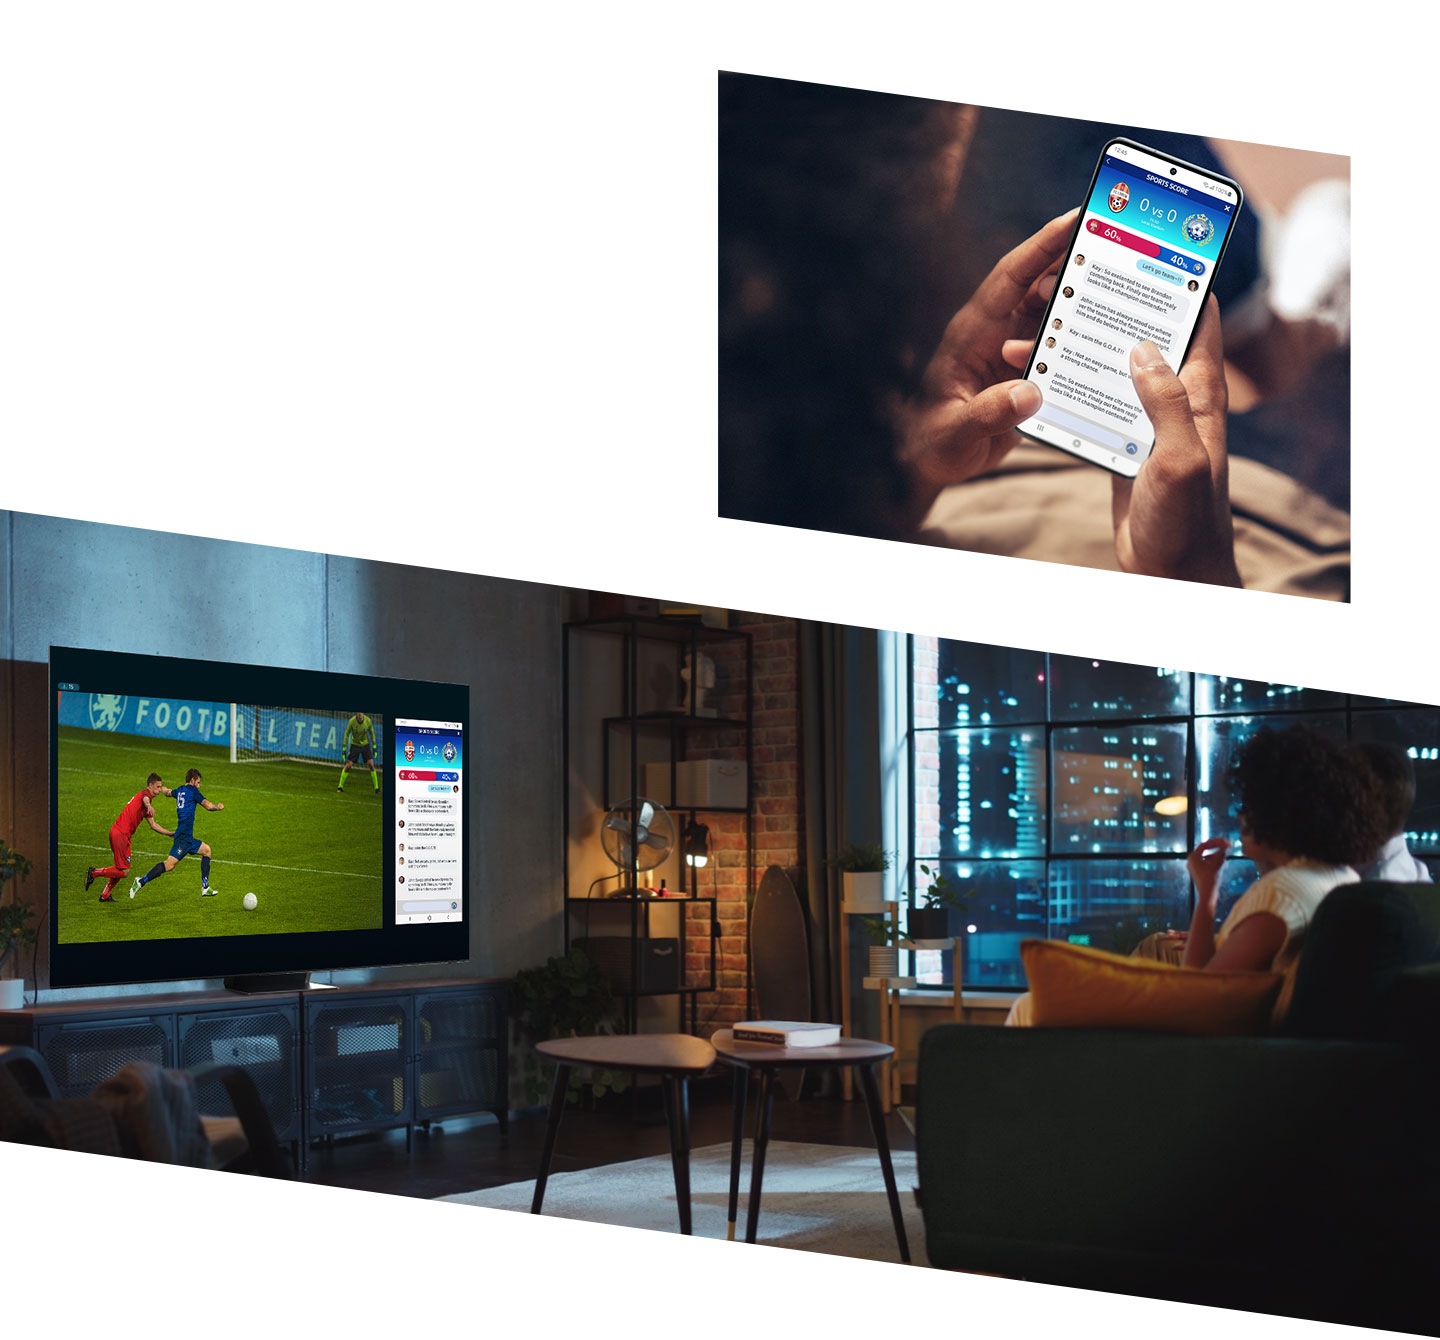 Люди смотрят футбольный матч на Smart TV, один из их смартфонов, на экране которого отображается поток комментариев, дублируется на экране телевизора с помощью функции Multi View, позволяющей им видеть оба экрана одновременно.